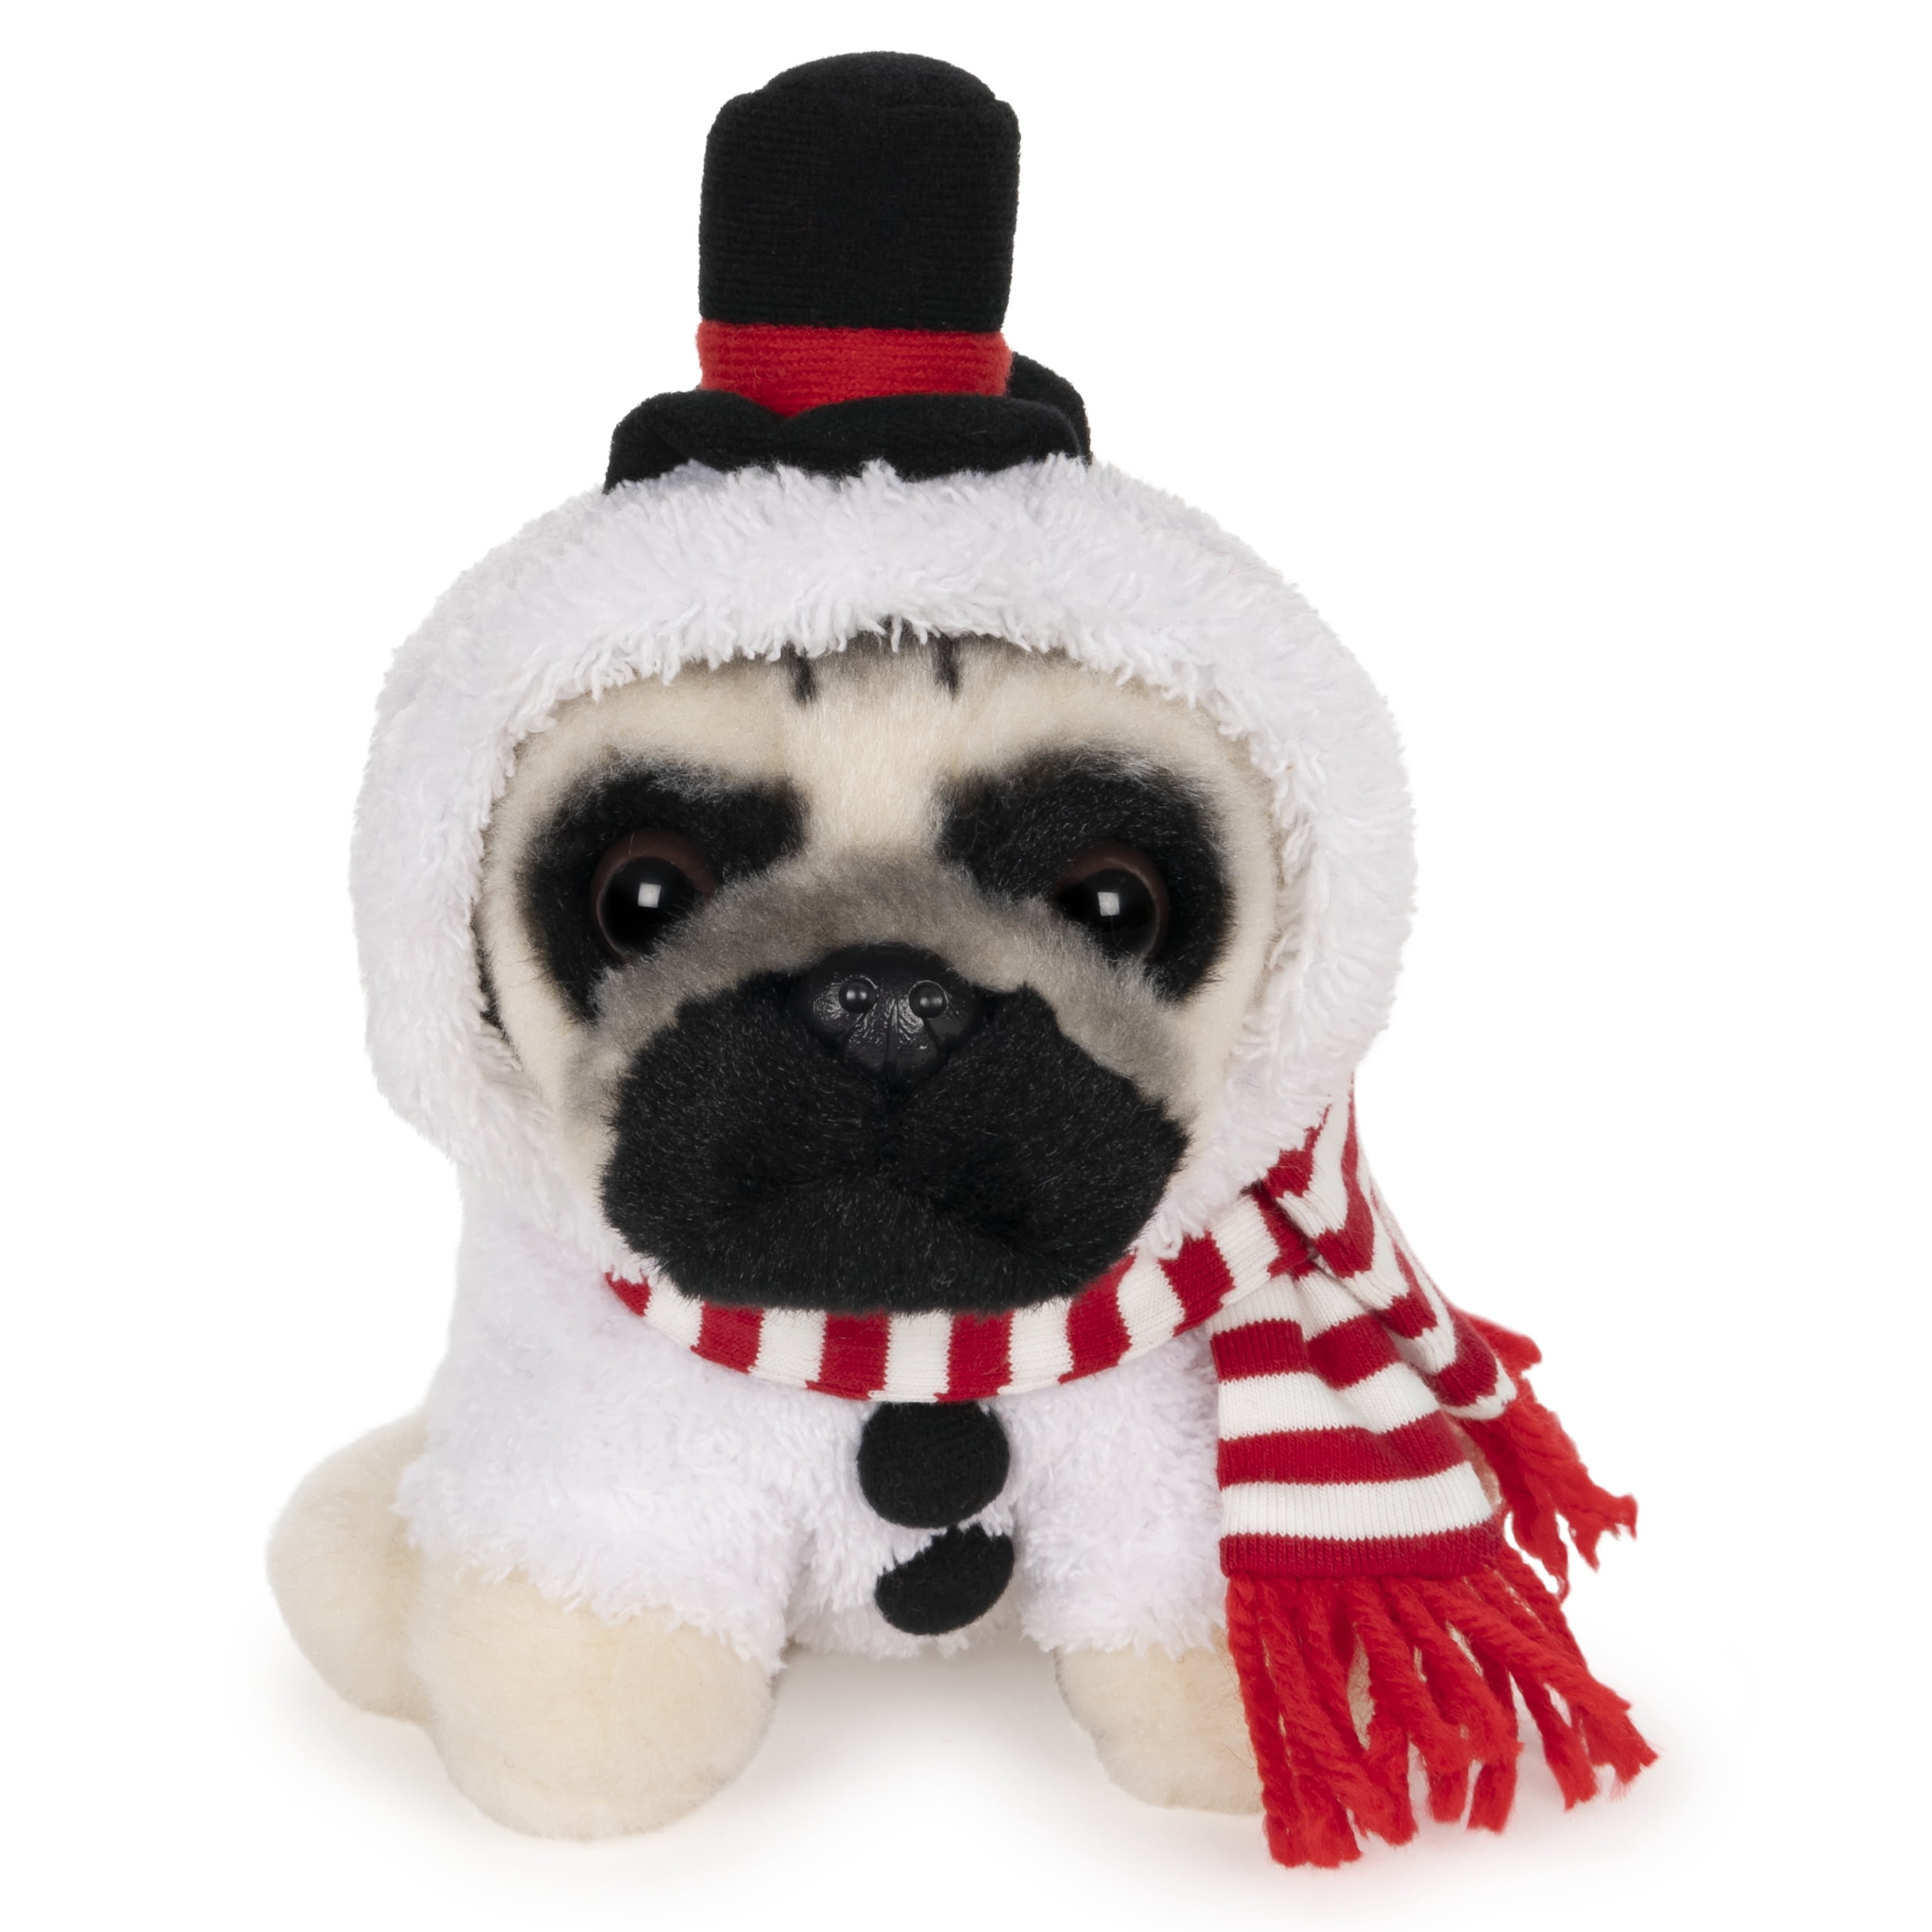 GUND Doug the Pug Snowman Holiday Plush Stuffed Animal Dog, 5